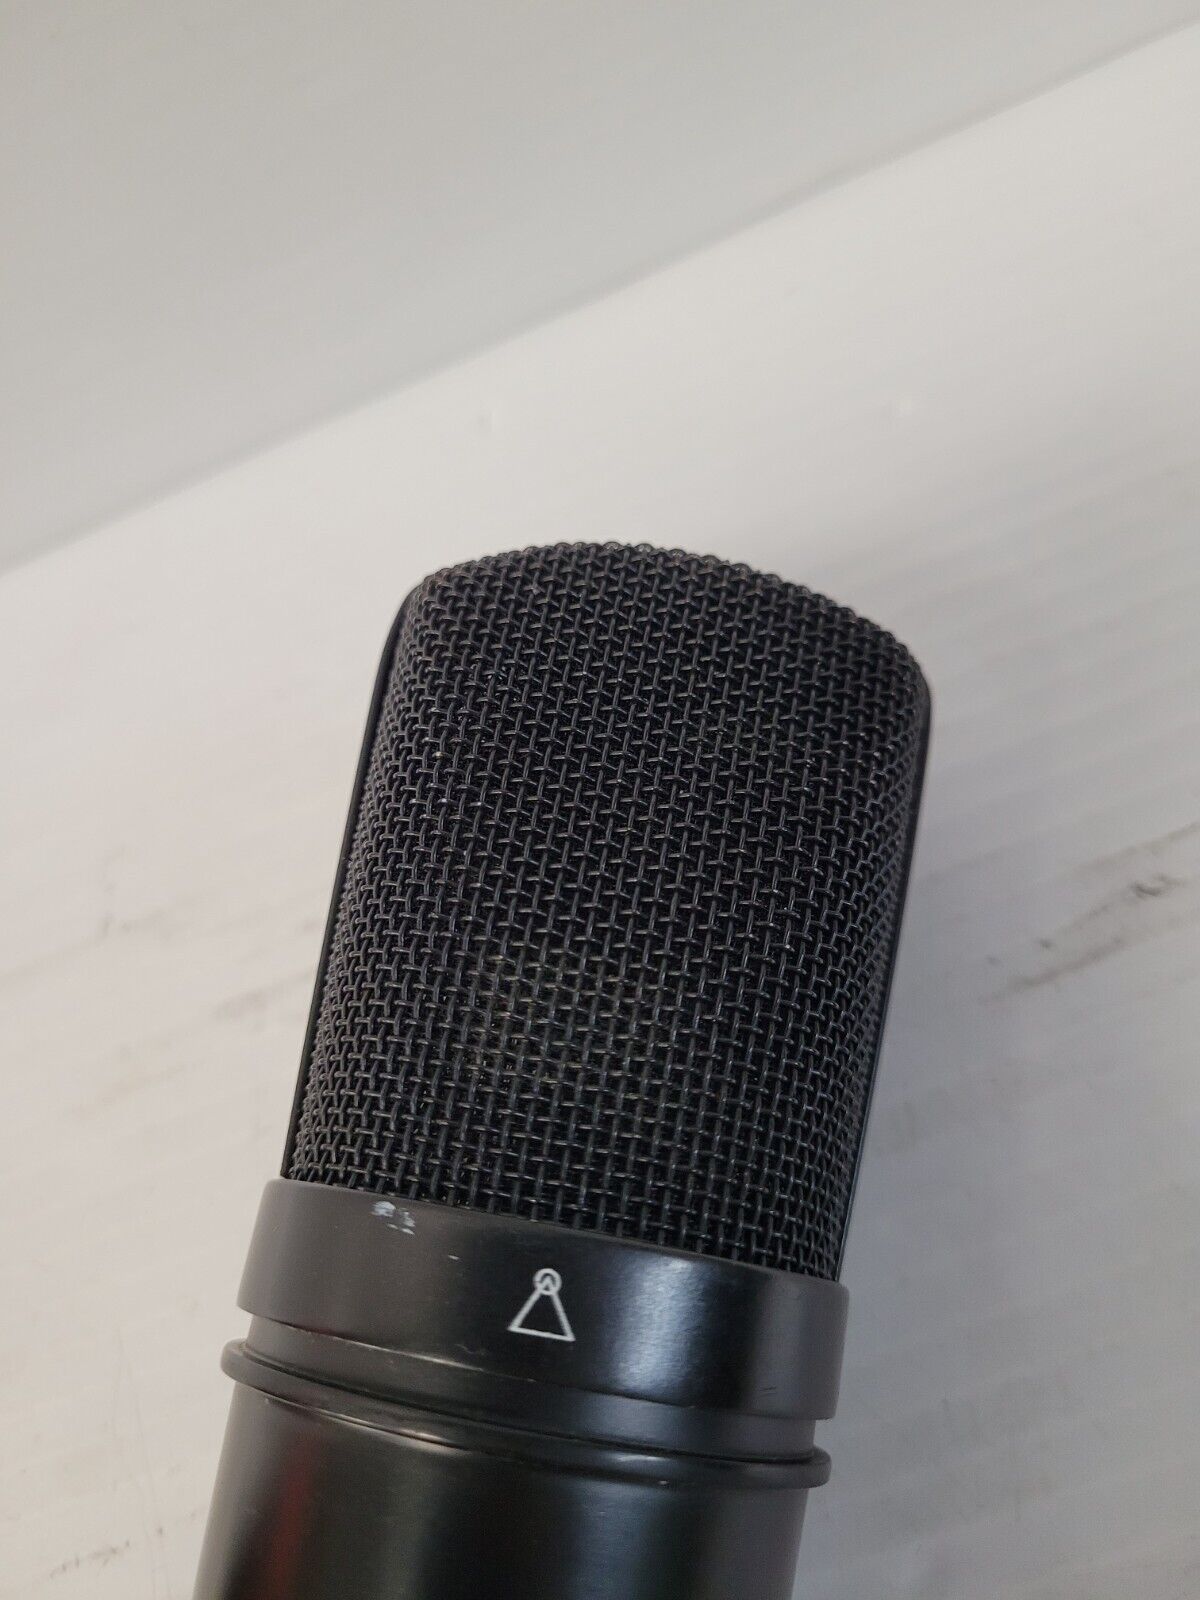 (N78606-1) Apex 430 Microphone